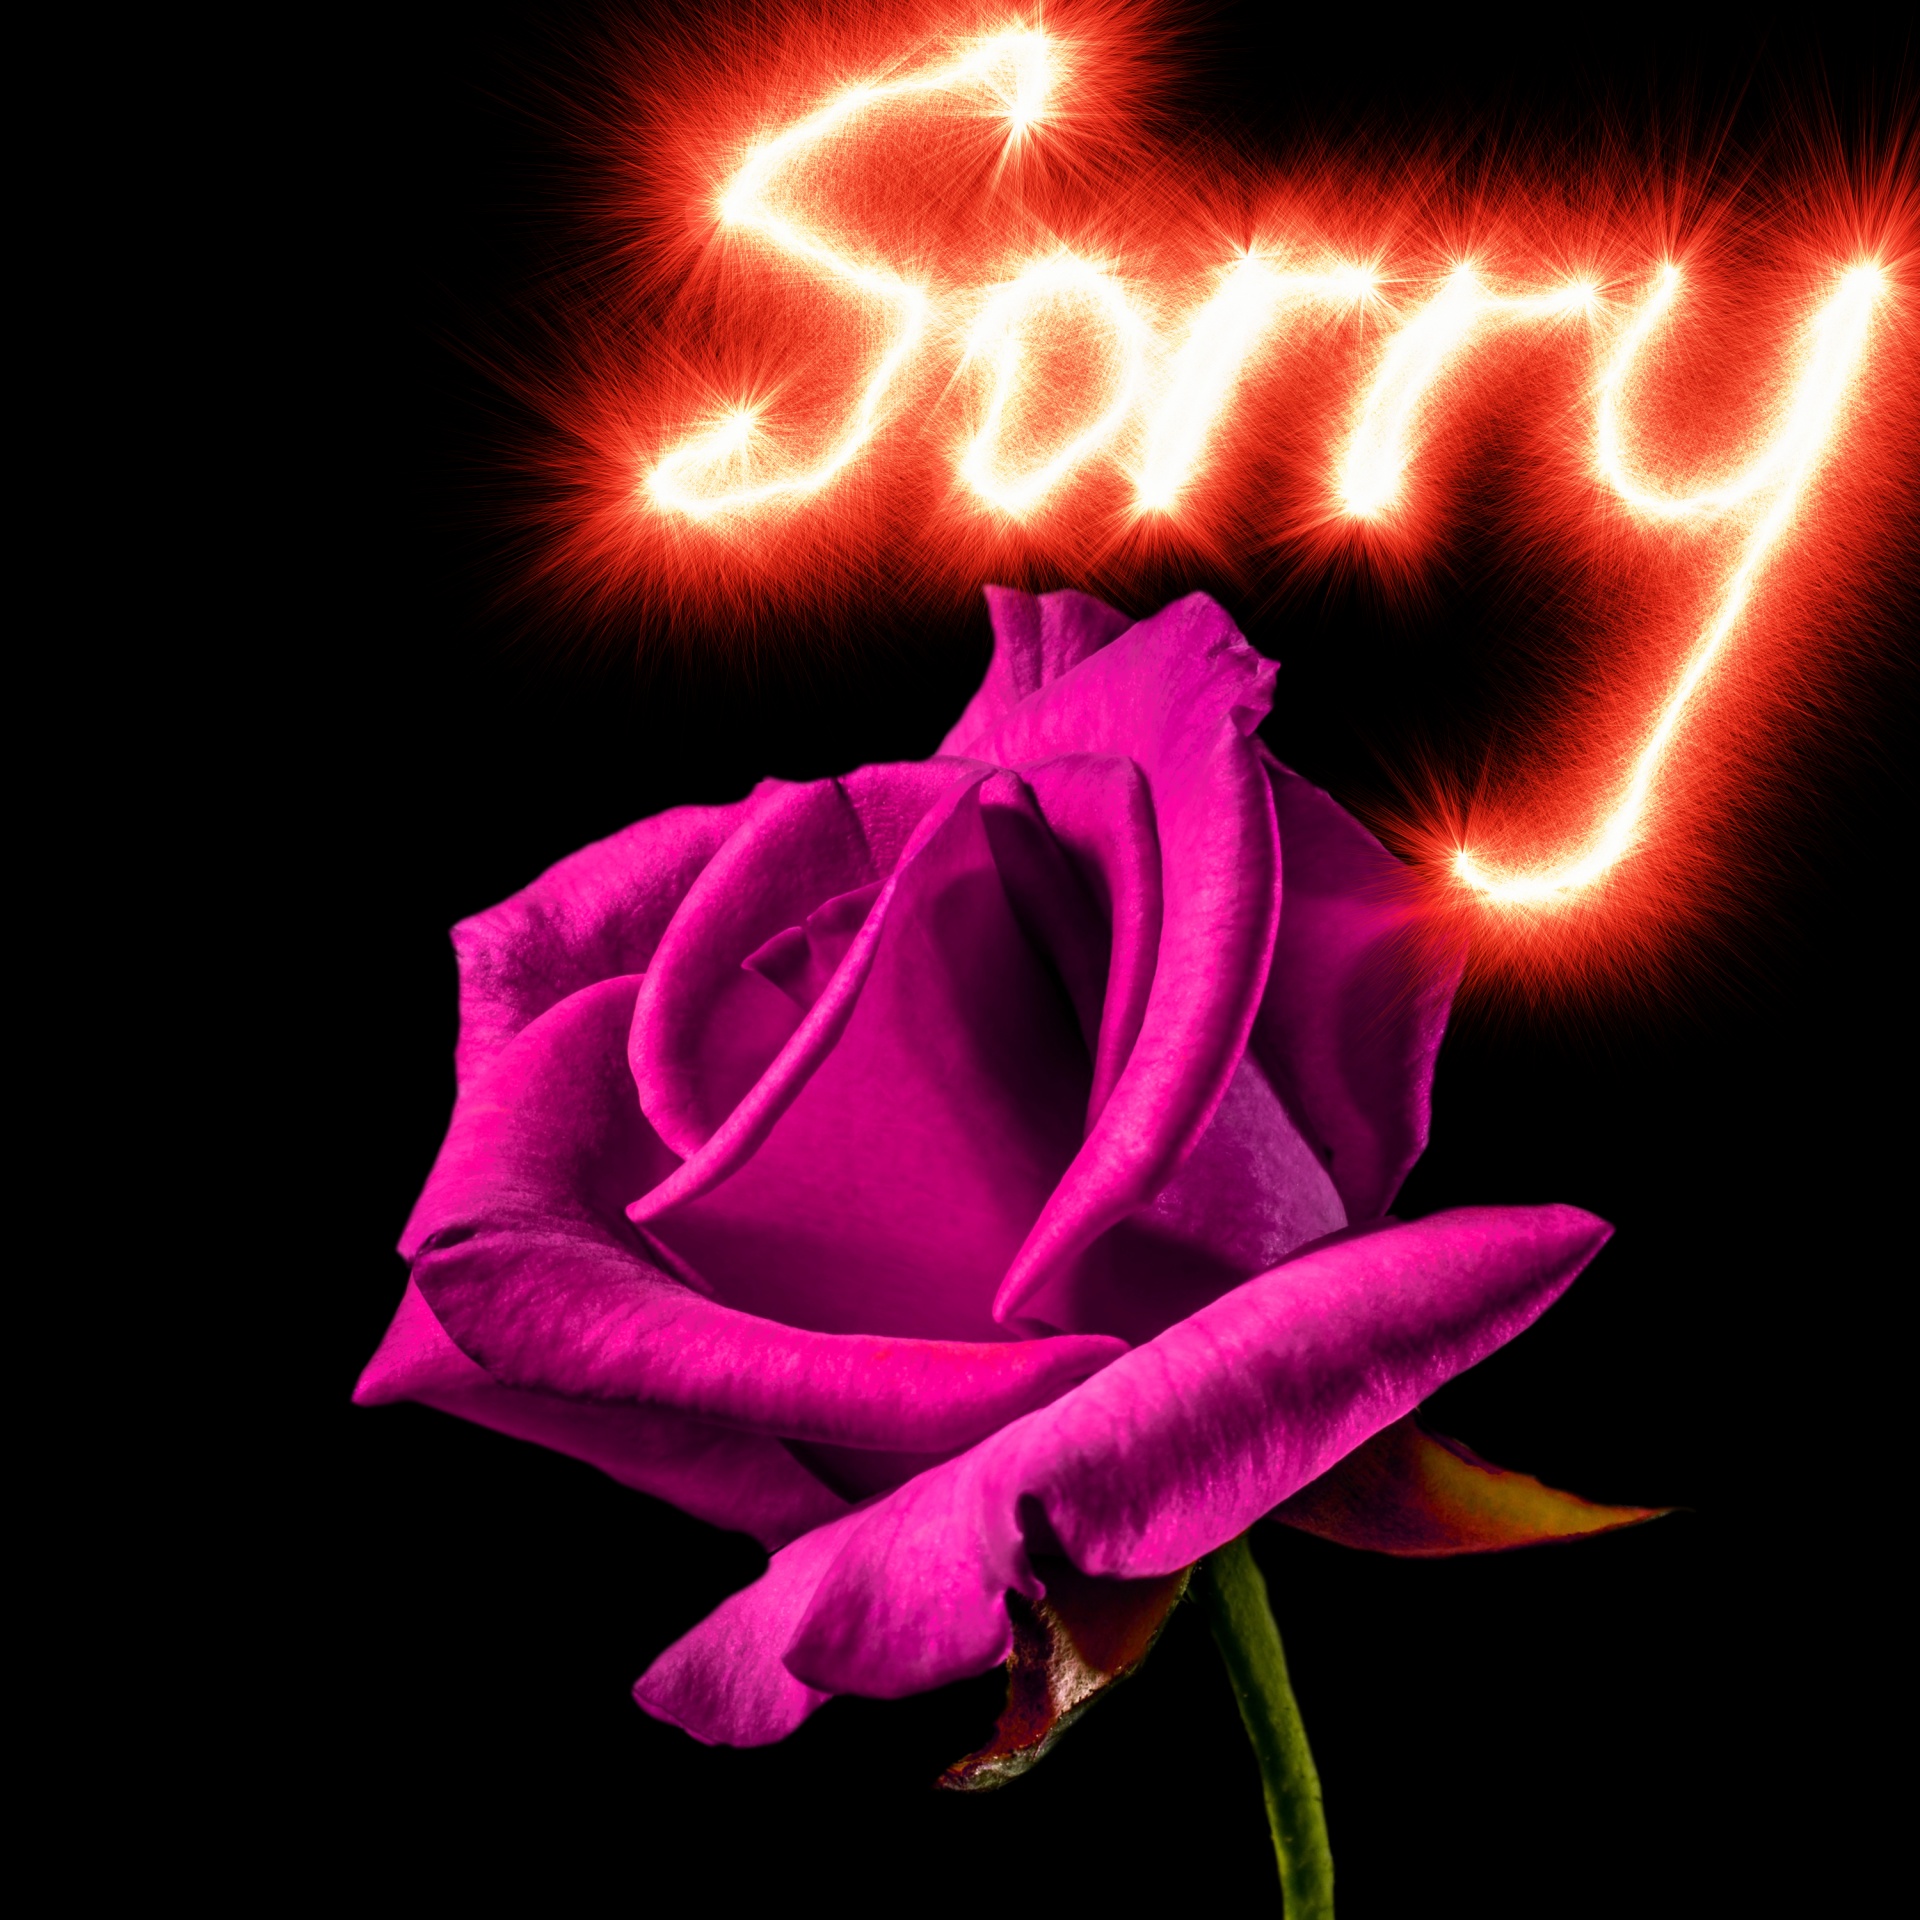 rose background apology free photo